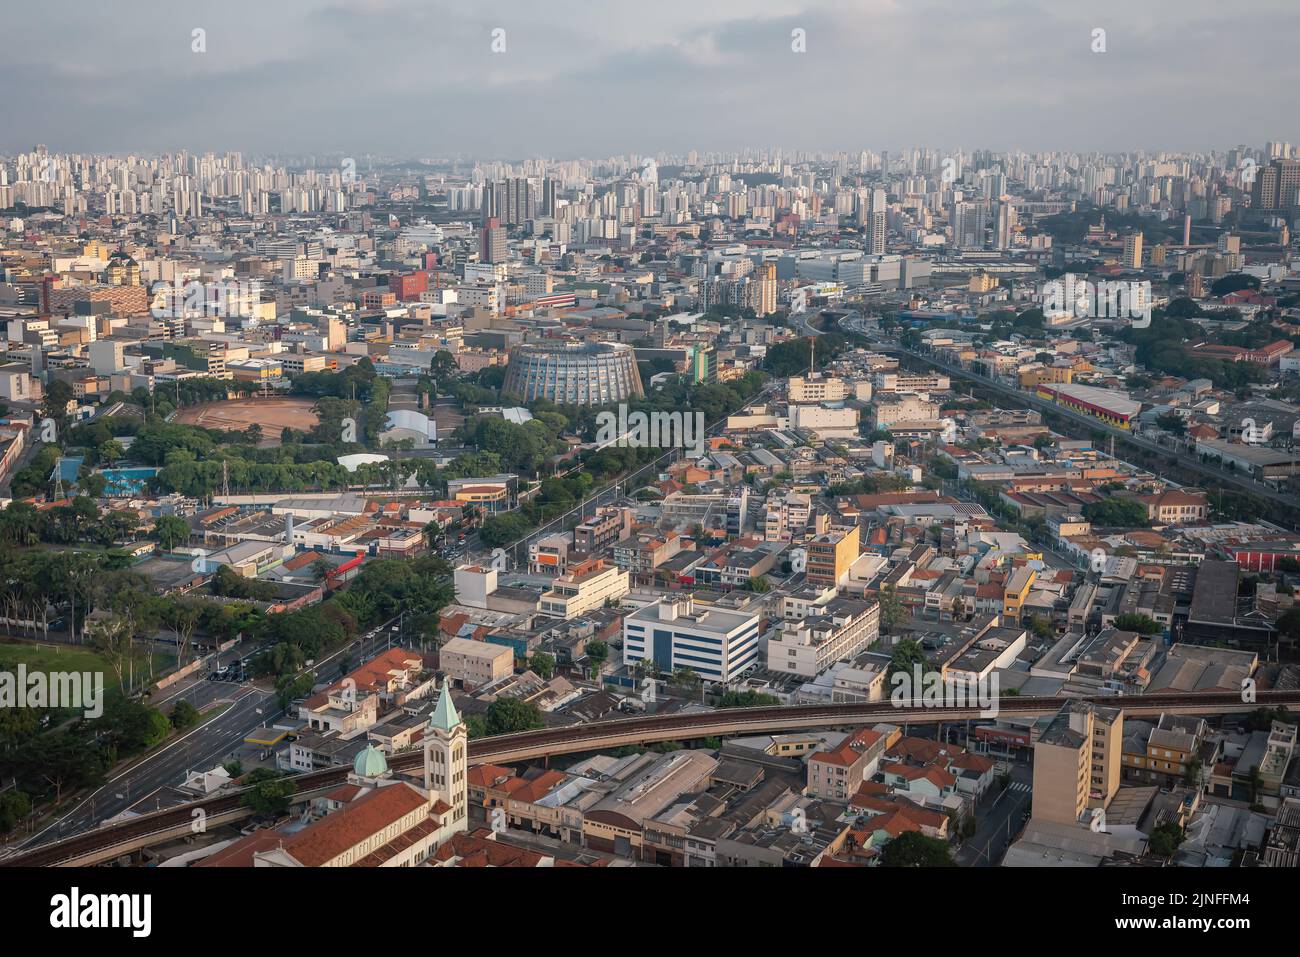 Luftaufnahme von Sao Paulo und Militärpolizei Verwaltungszentrum (Panelao da Policia Militar) - Sao Paulo, Brasilien Stockfoto